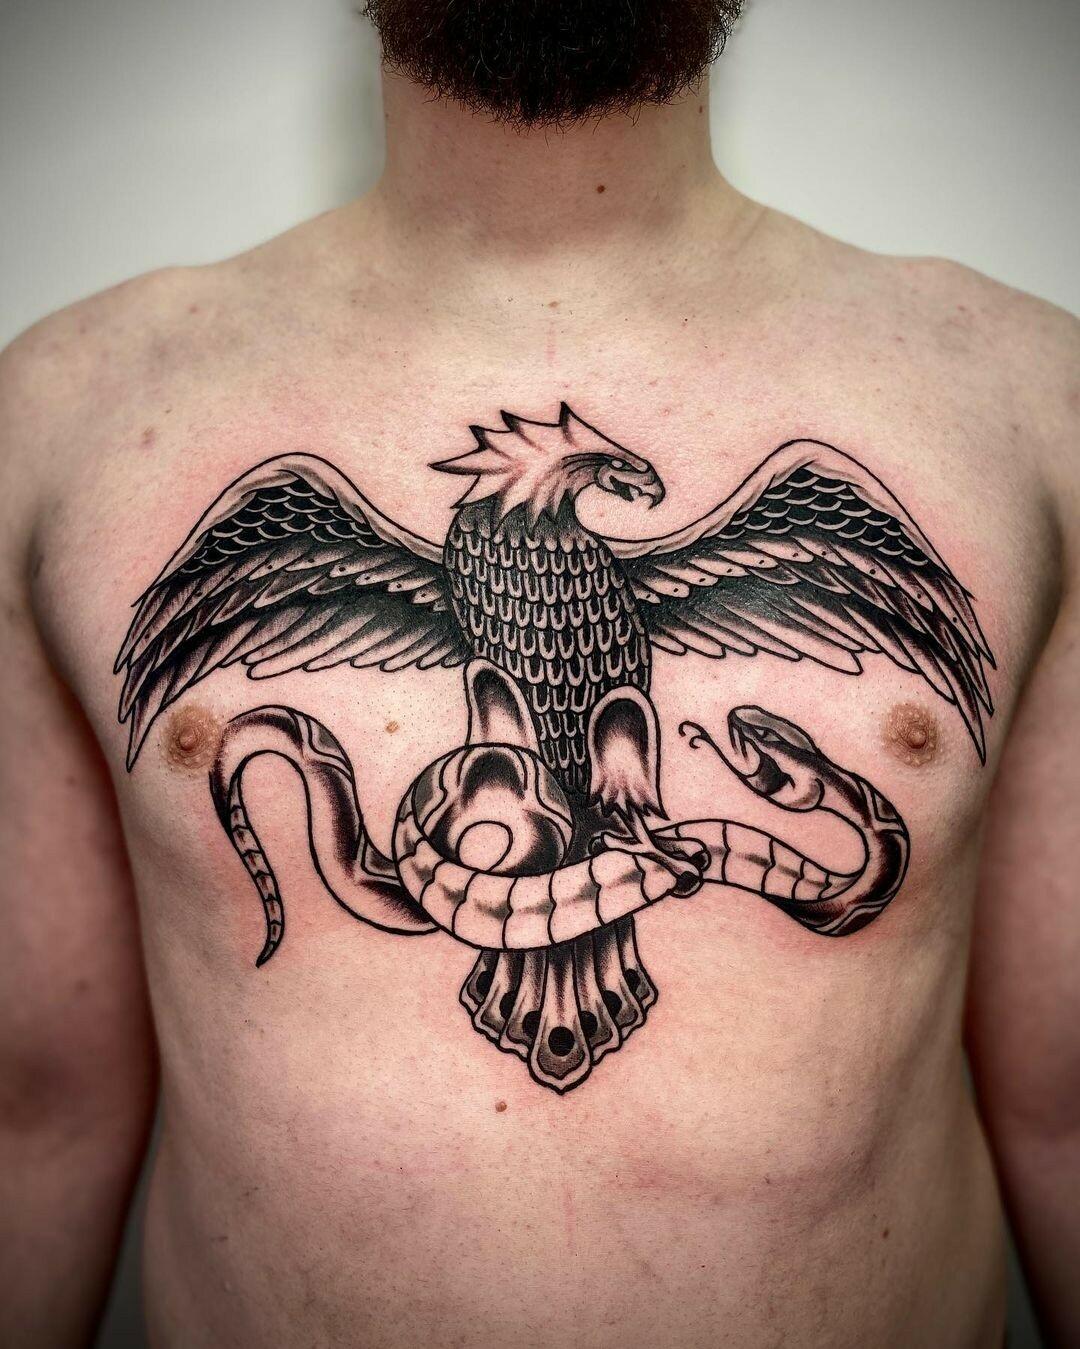 Inksearch tattoo RadekG